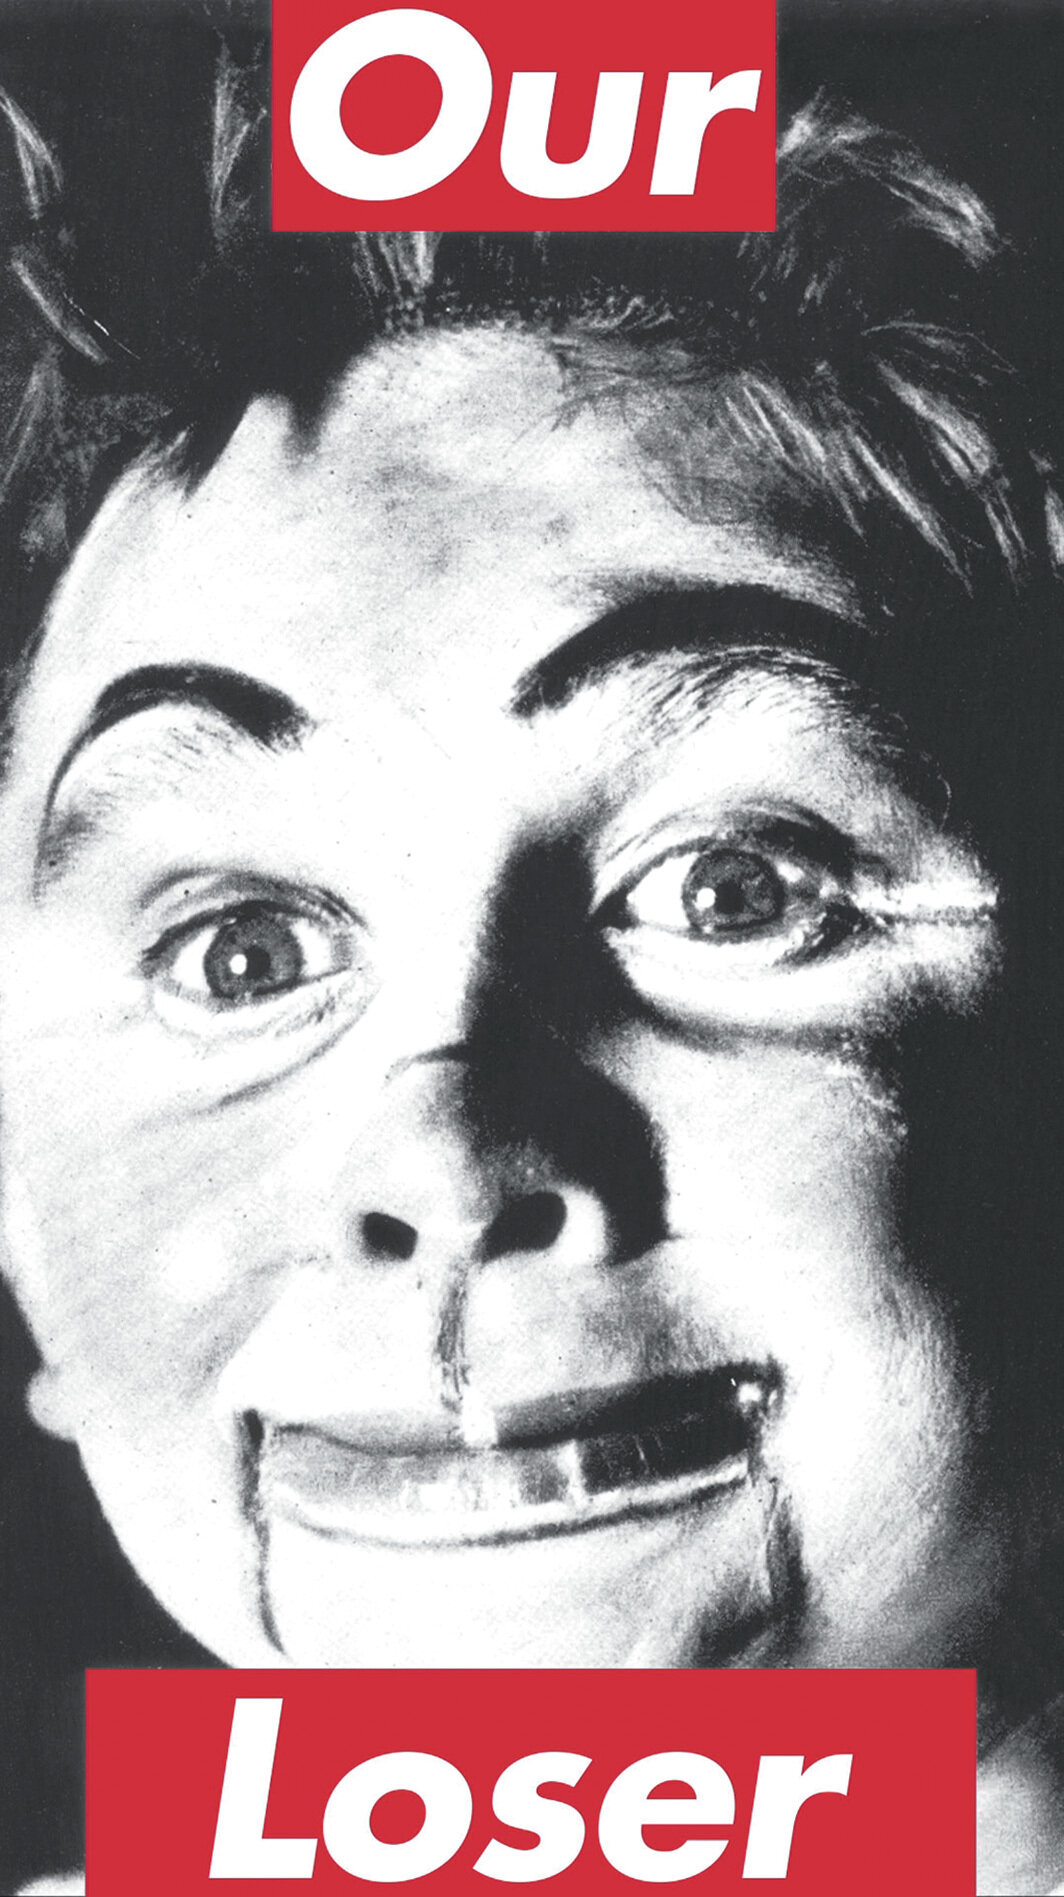 芭芭拉·克鲁格，《无题（我们的领袖）》，1987/2020，LED屏幕、单频道录像（彩色有声，时长24秒），11' 57⁄8“ × 6' 6 3⁄4”.